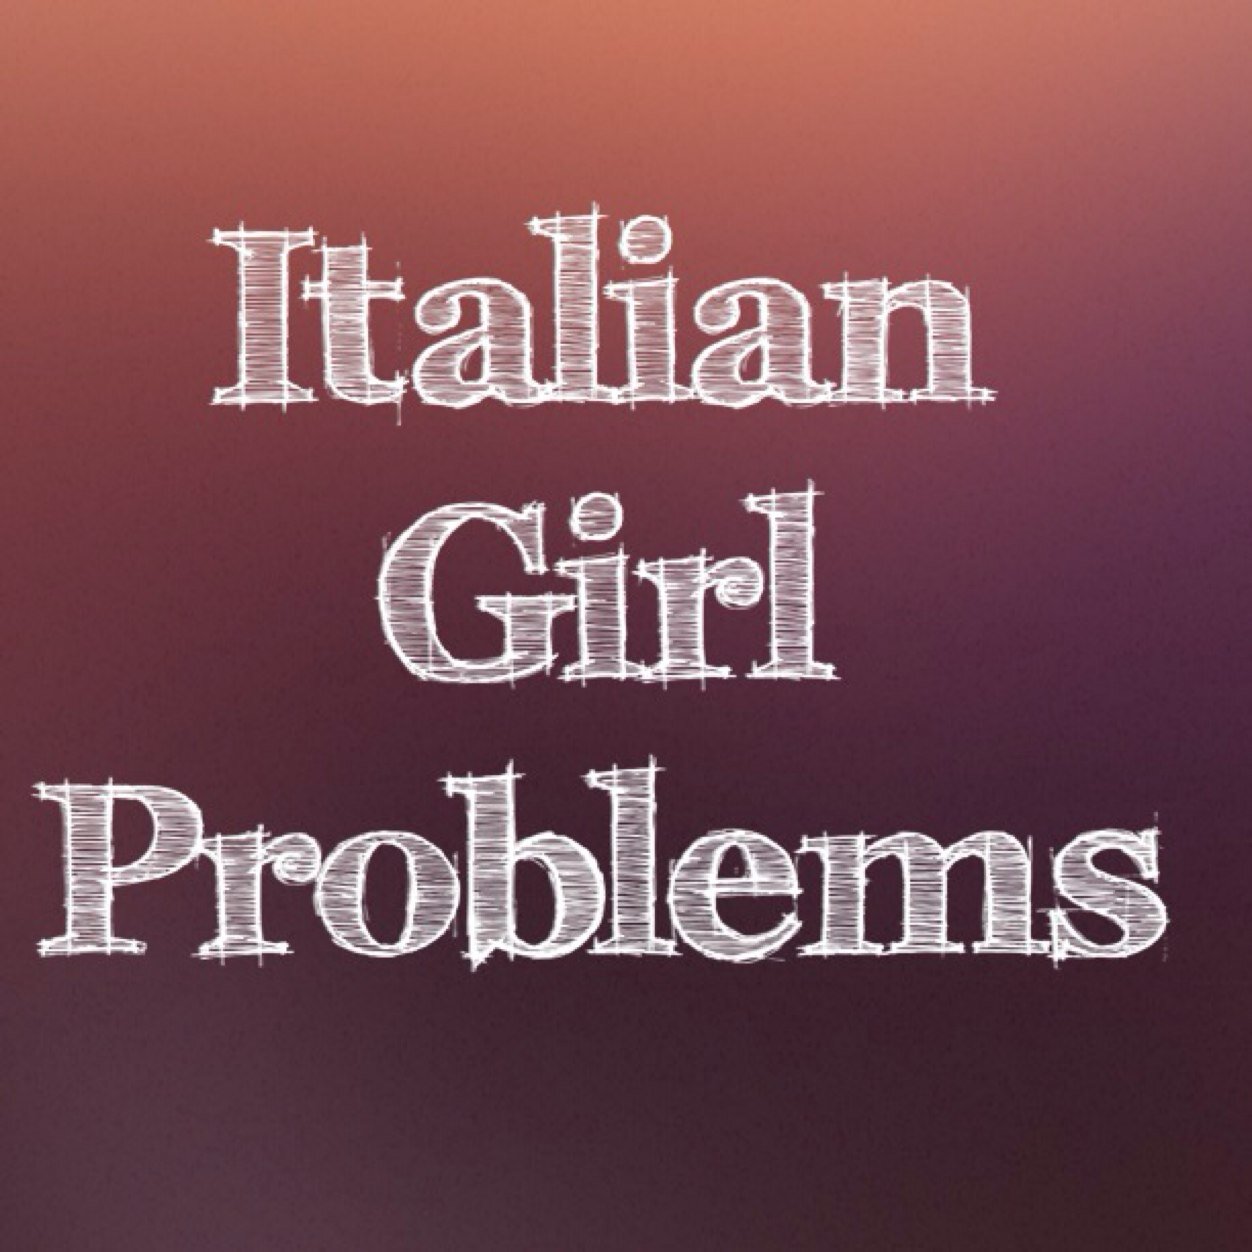 Italian Girl Problems. https://t.co/RRfrt85axa